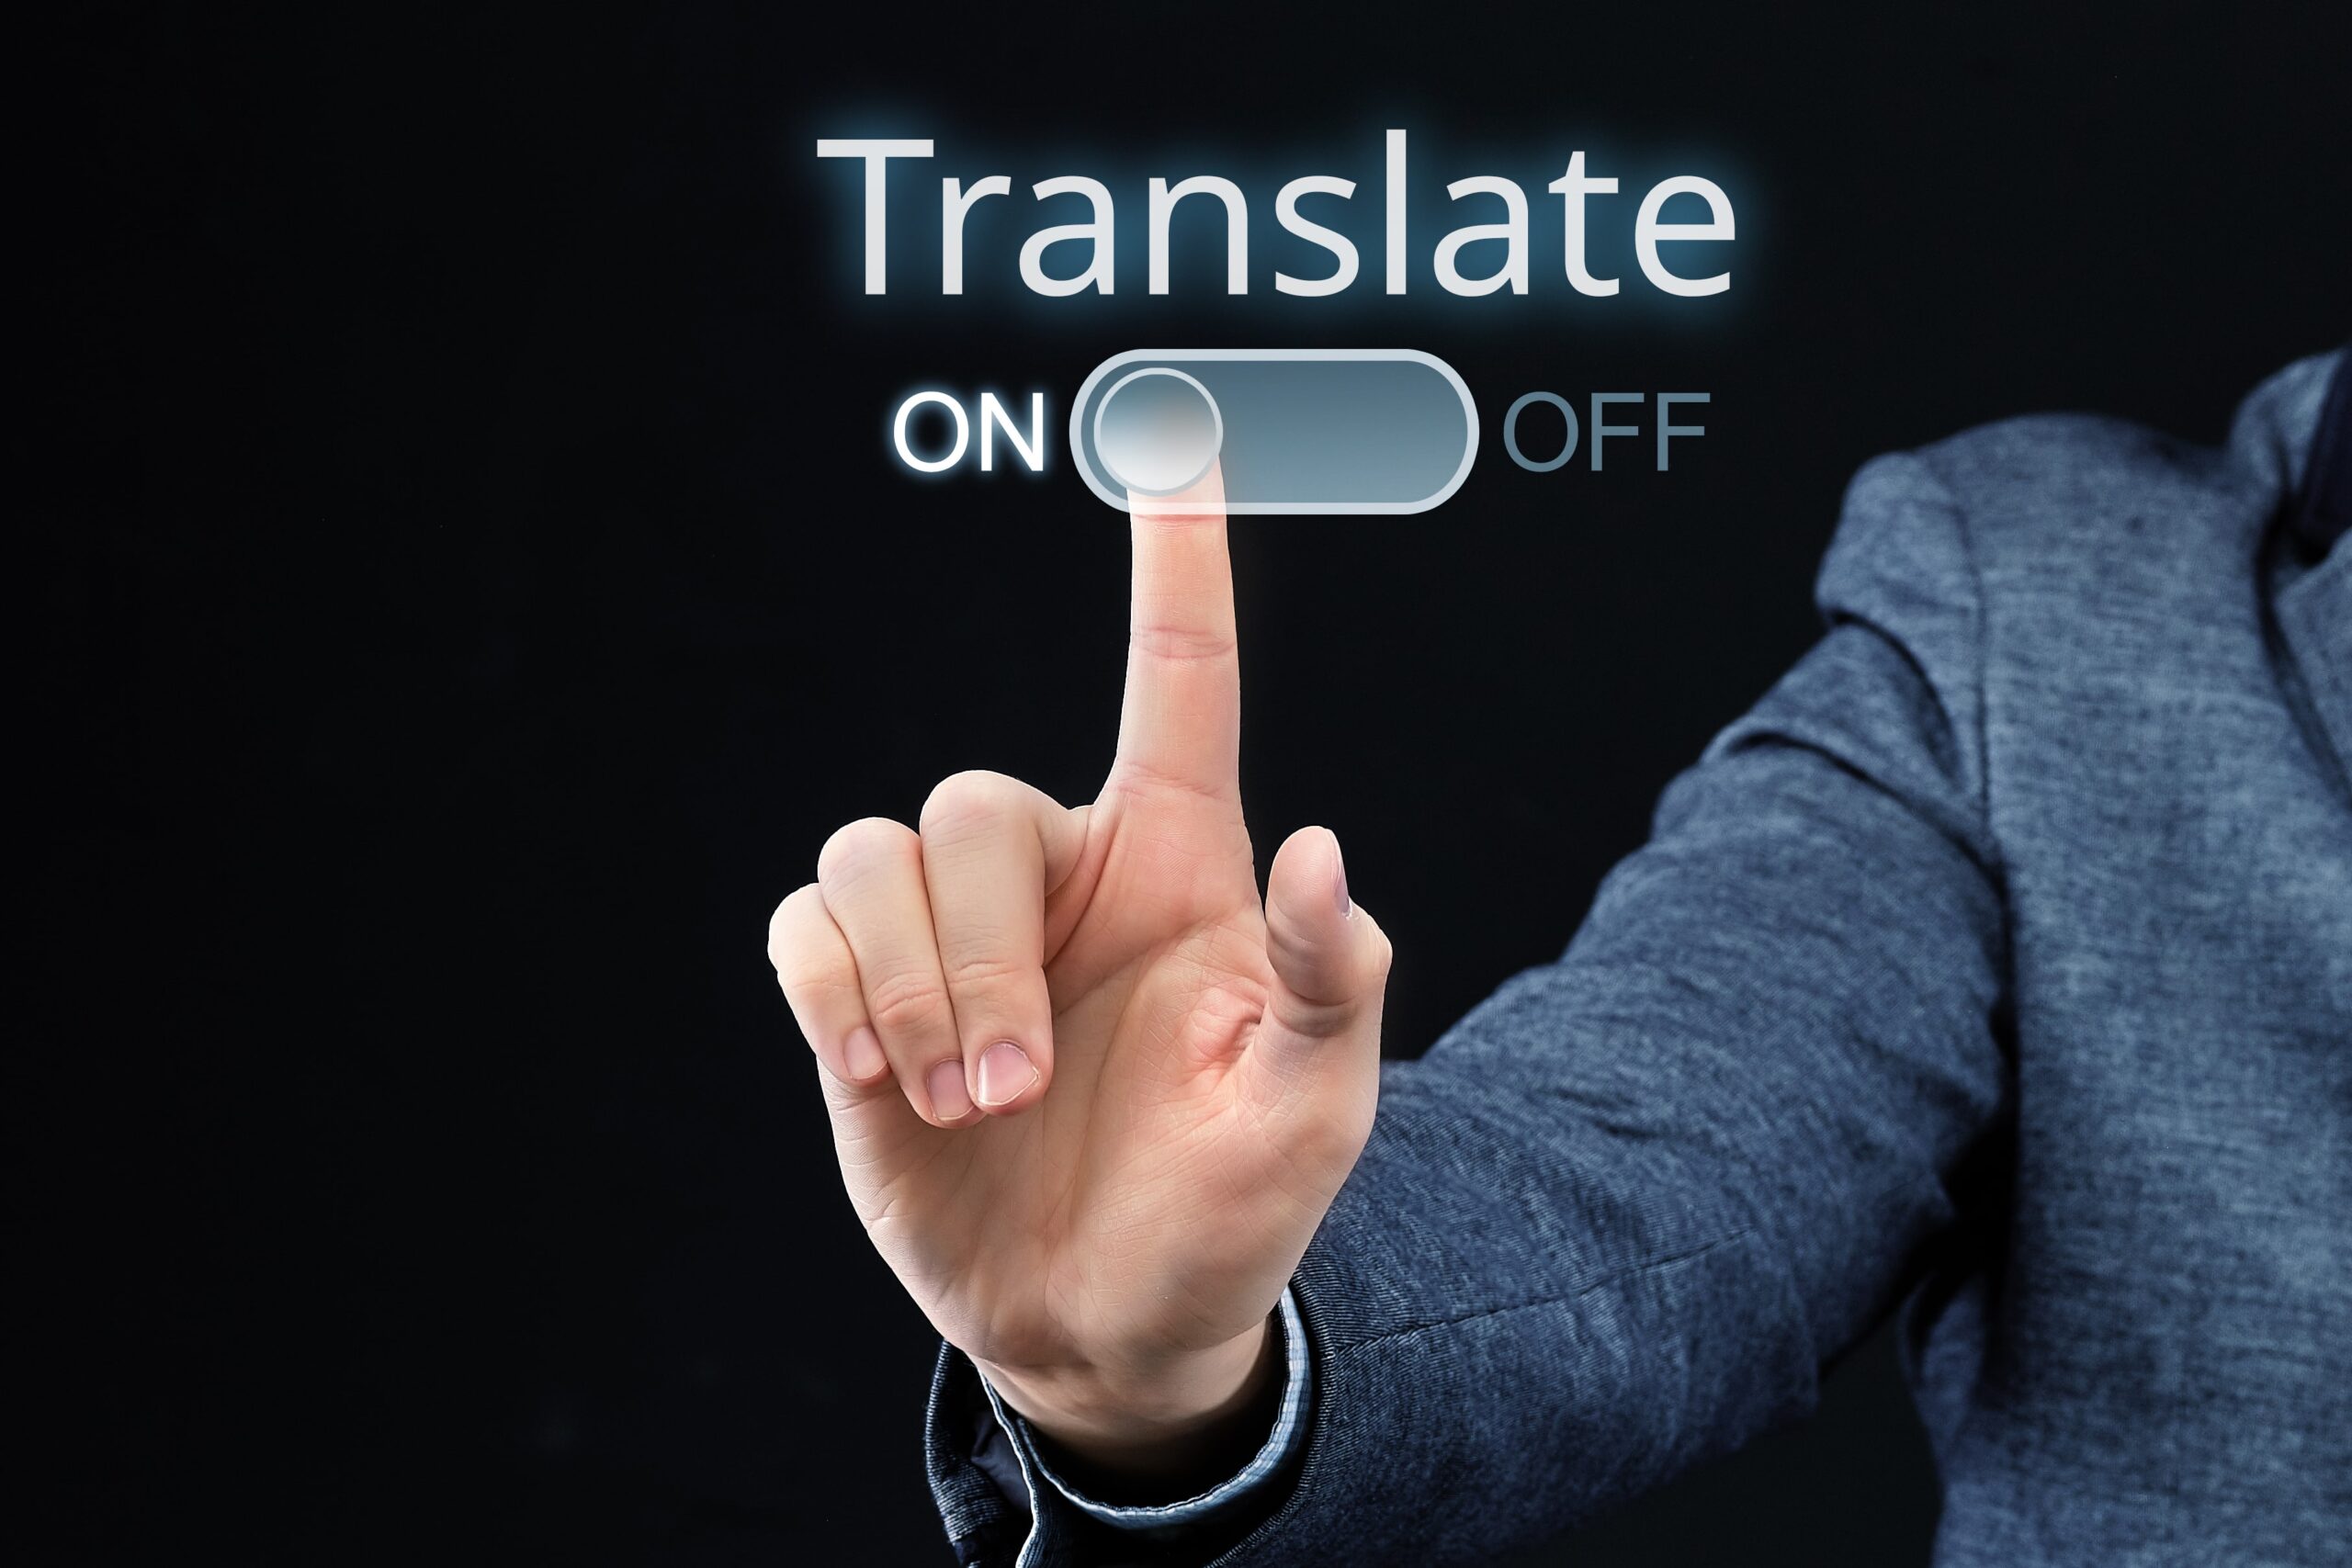 Quanto tempo leva para fazer uma tradução profissional?